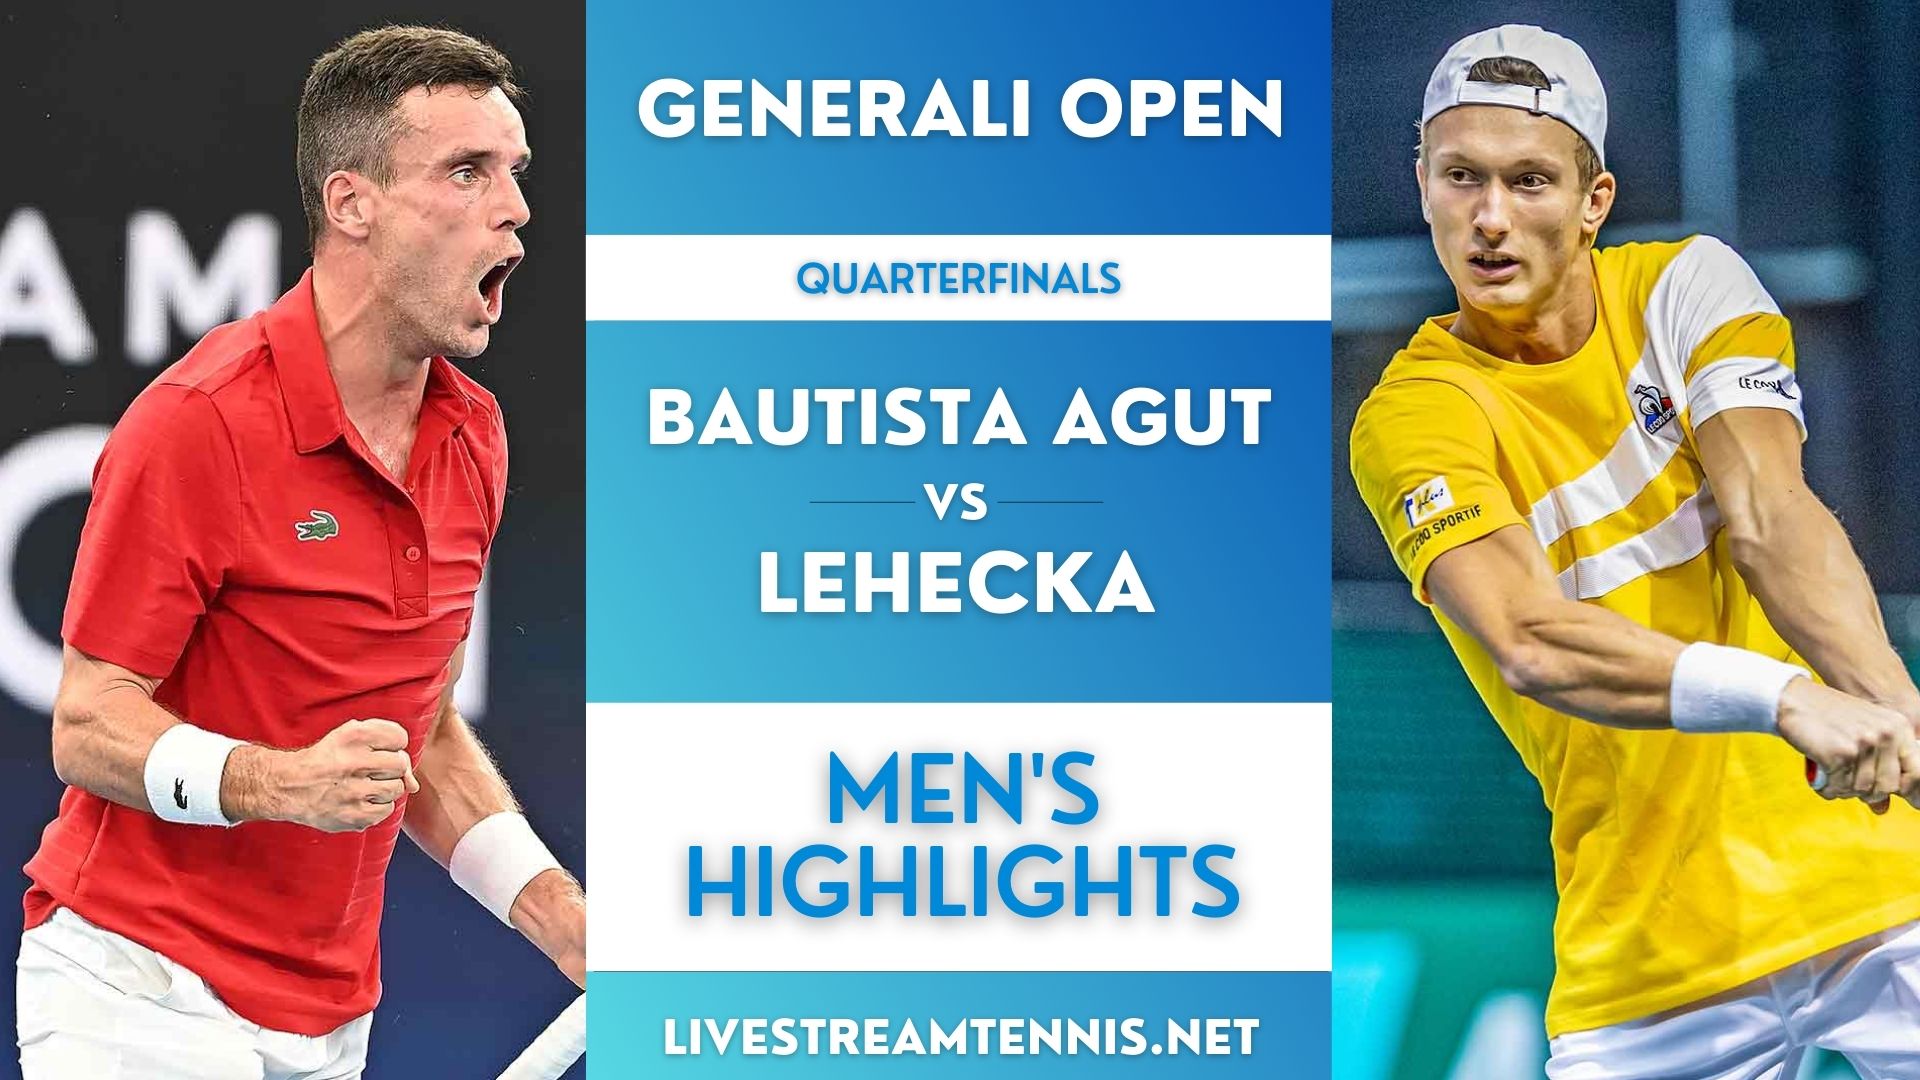 Generali Open ATP Quarterfinal 2 Highlights 2022